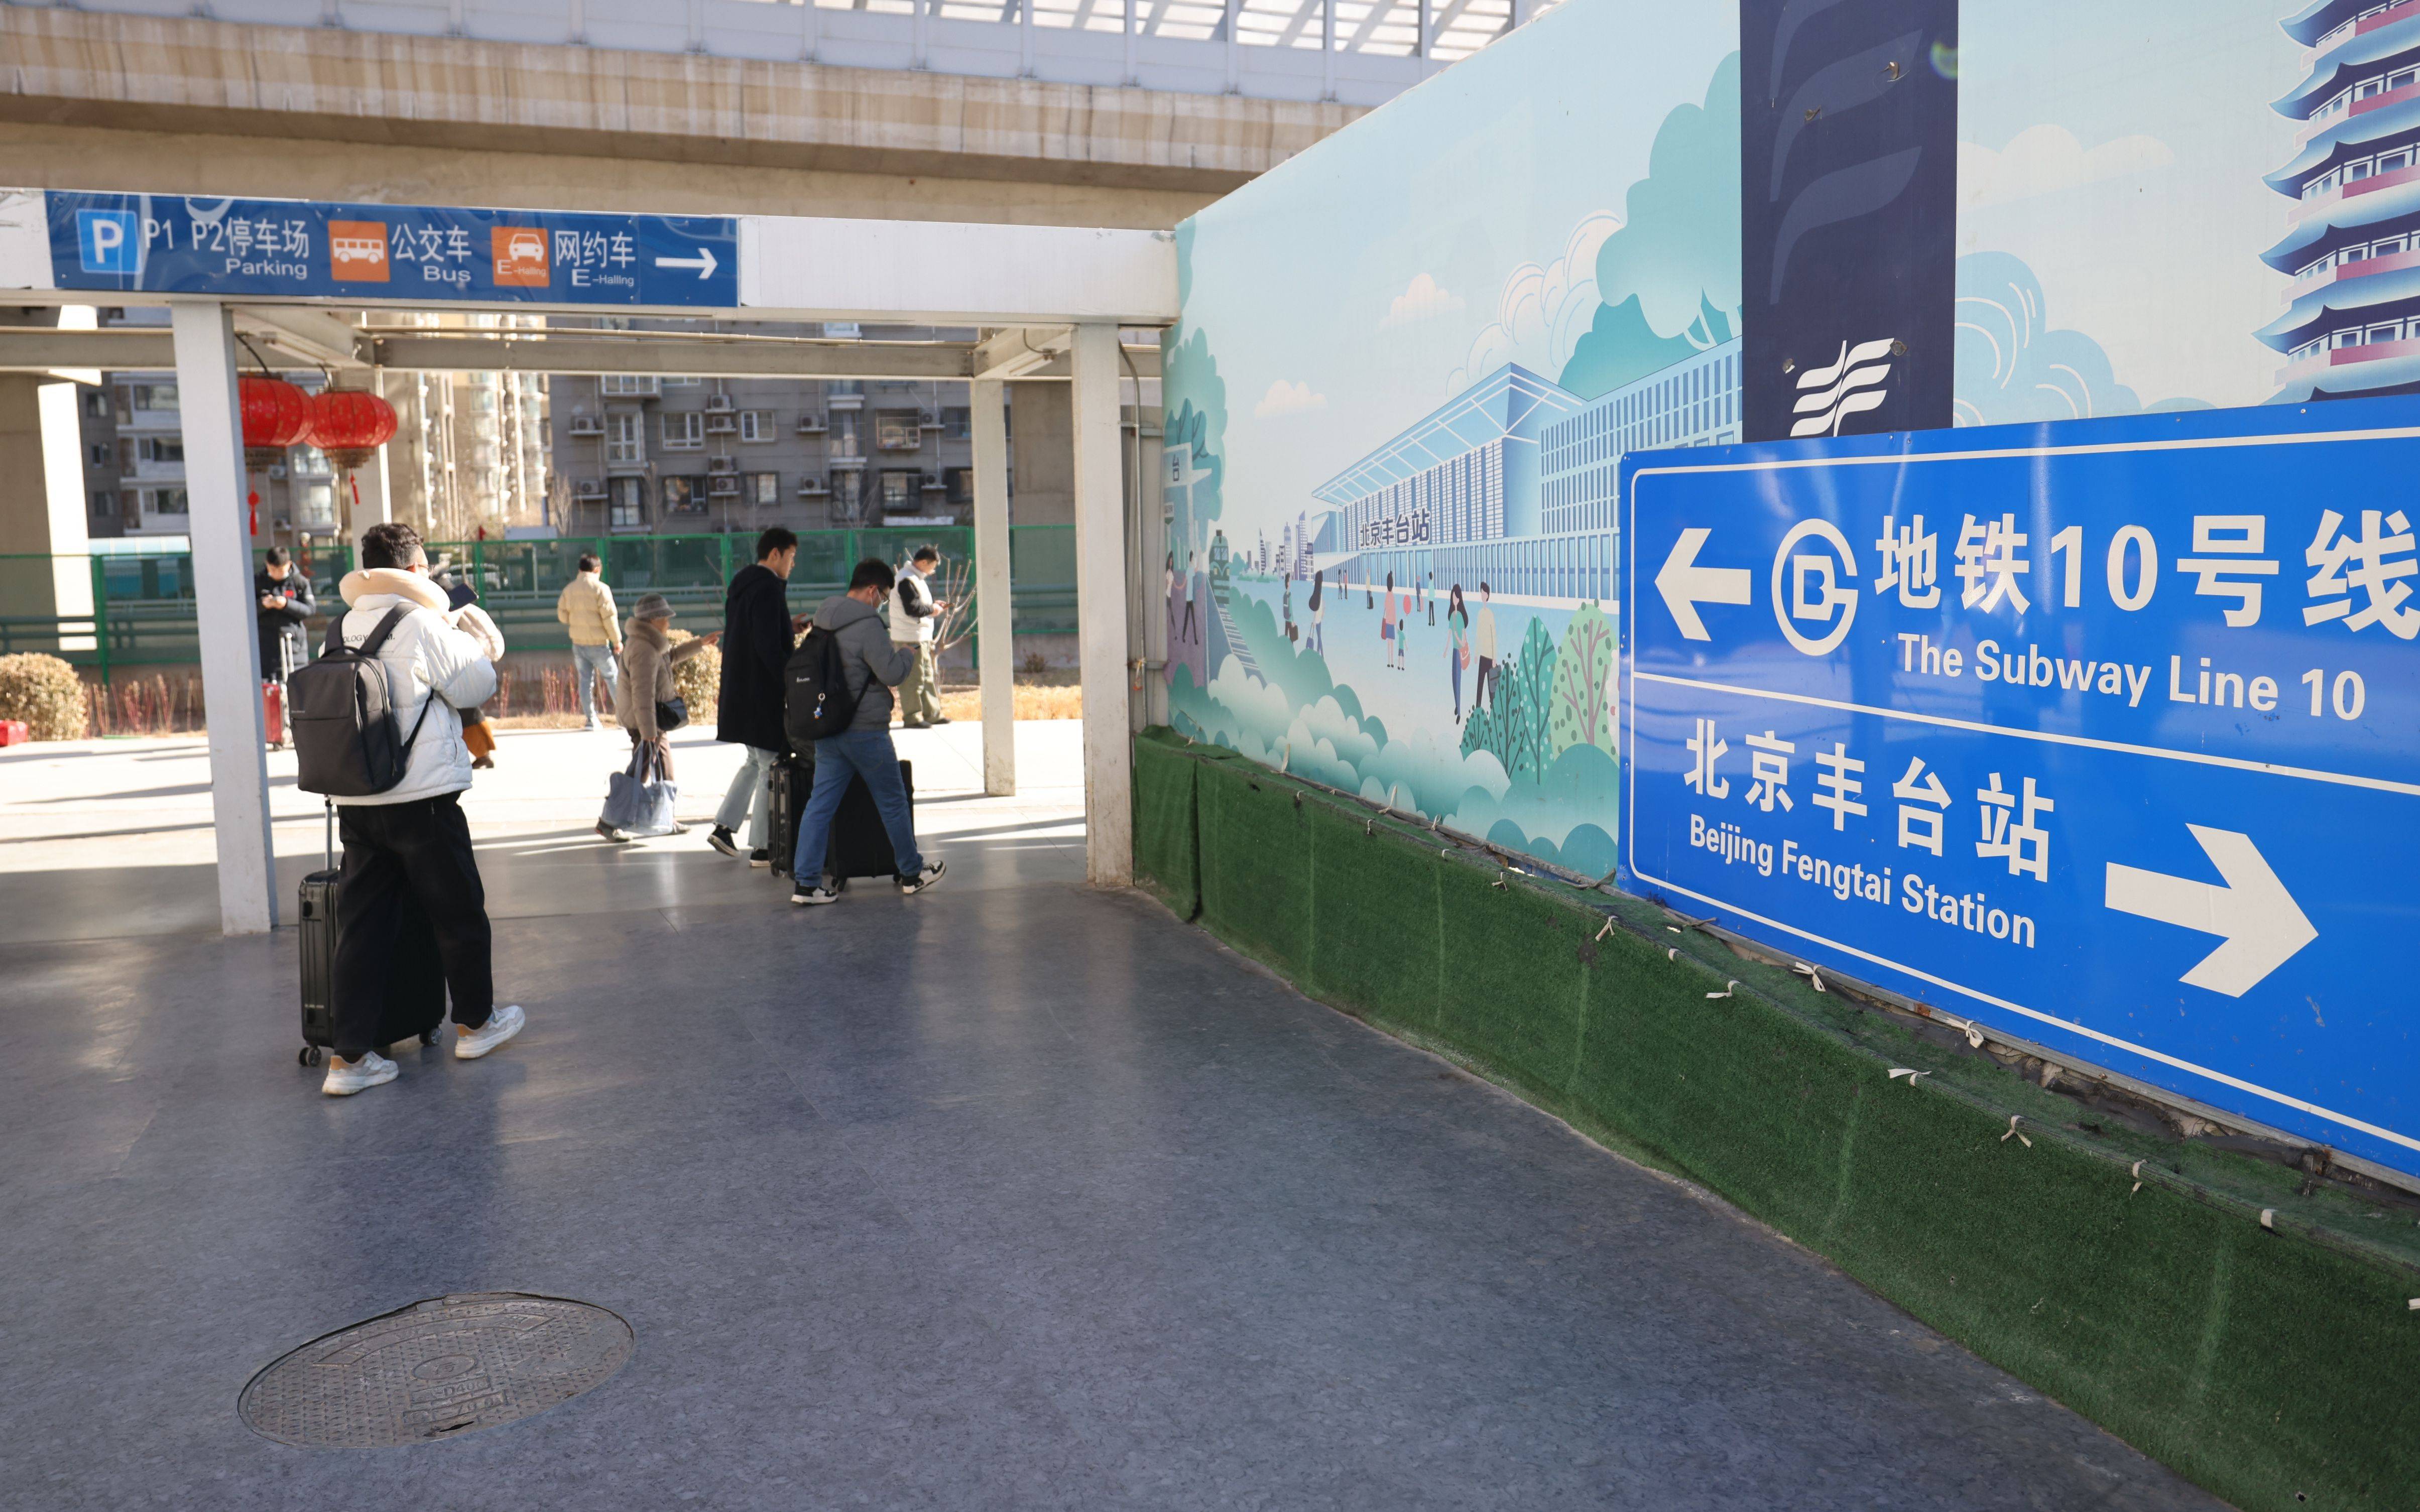 记者了解到,北京丰台站对进出站,出租车调度站,地铁通廊等站区换乘点